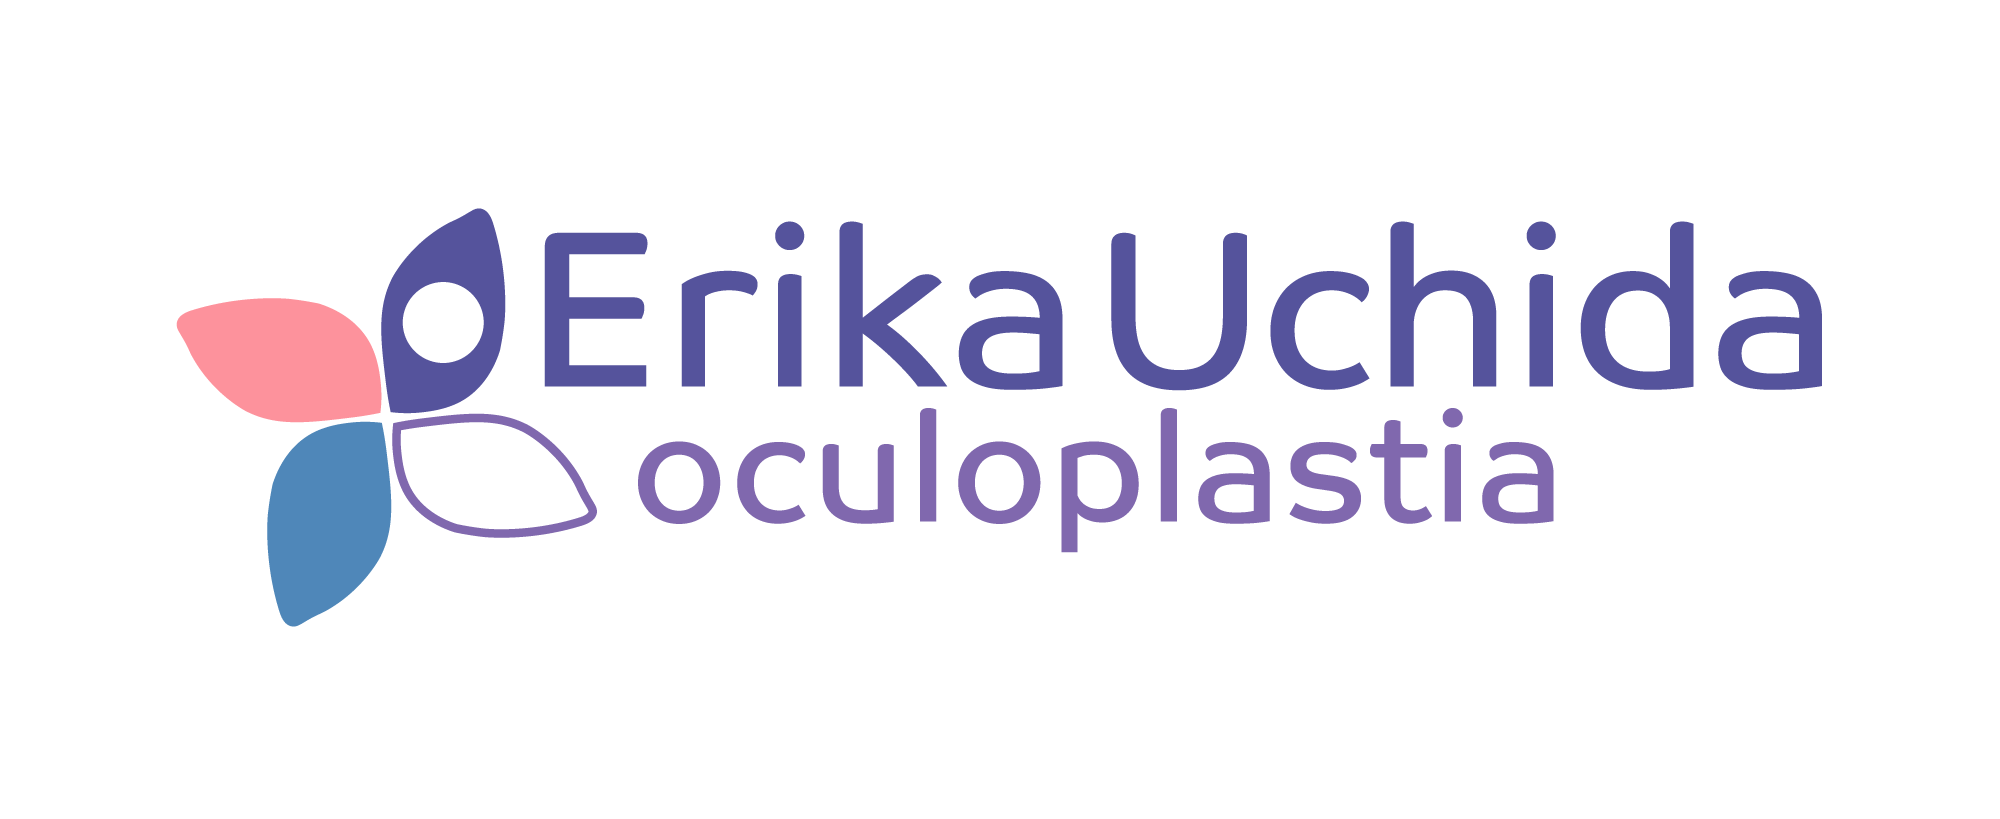 Erika Uchida Oculoplastia